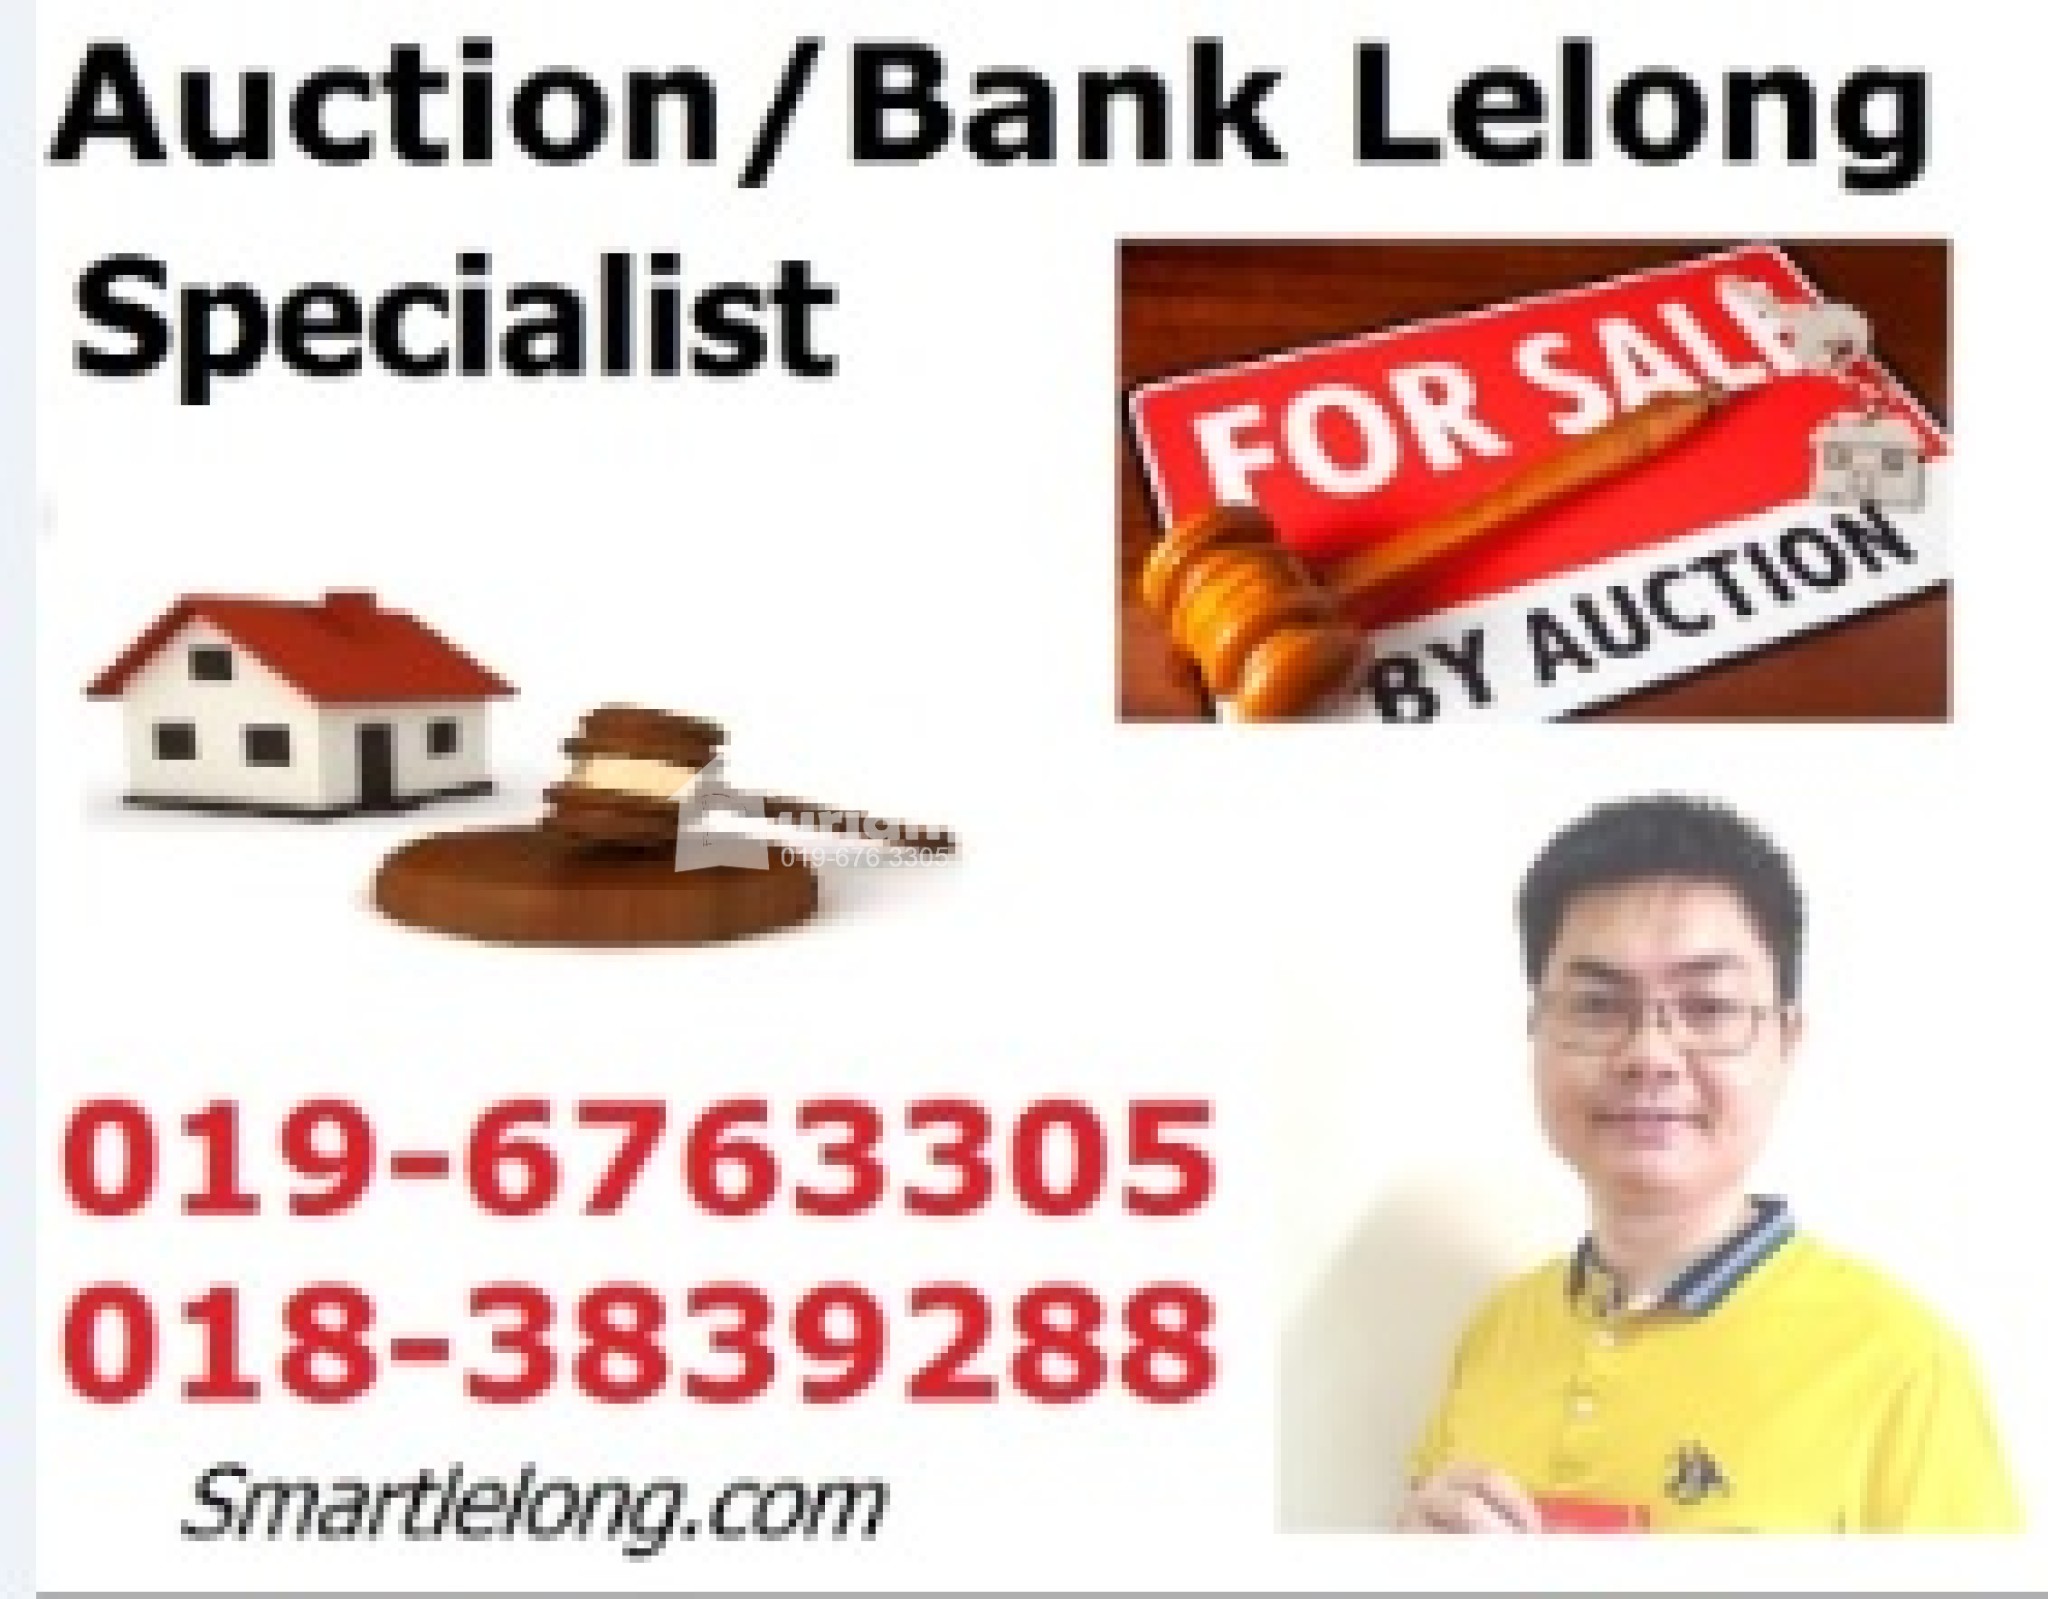 Semi D For Auction at Pinggiran Sungai Buloh